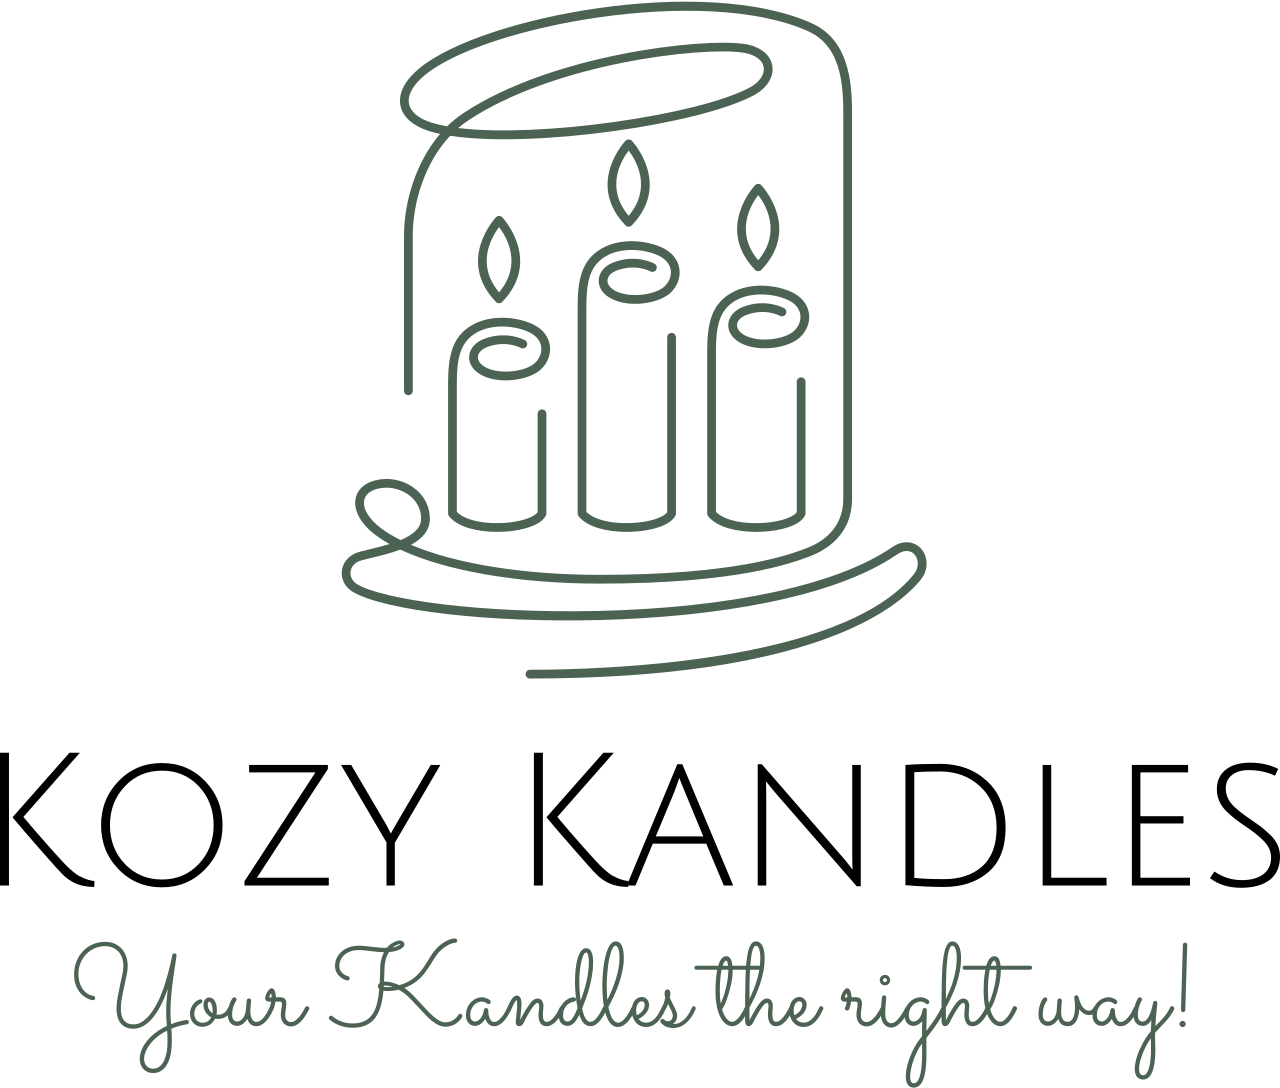 Kozy Kandles's logo